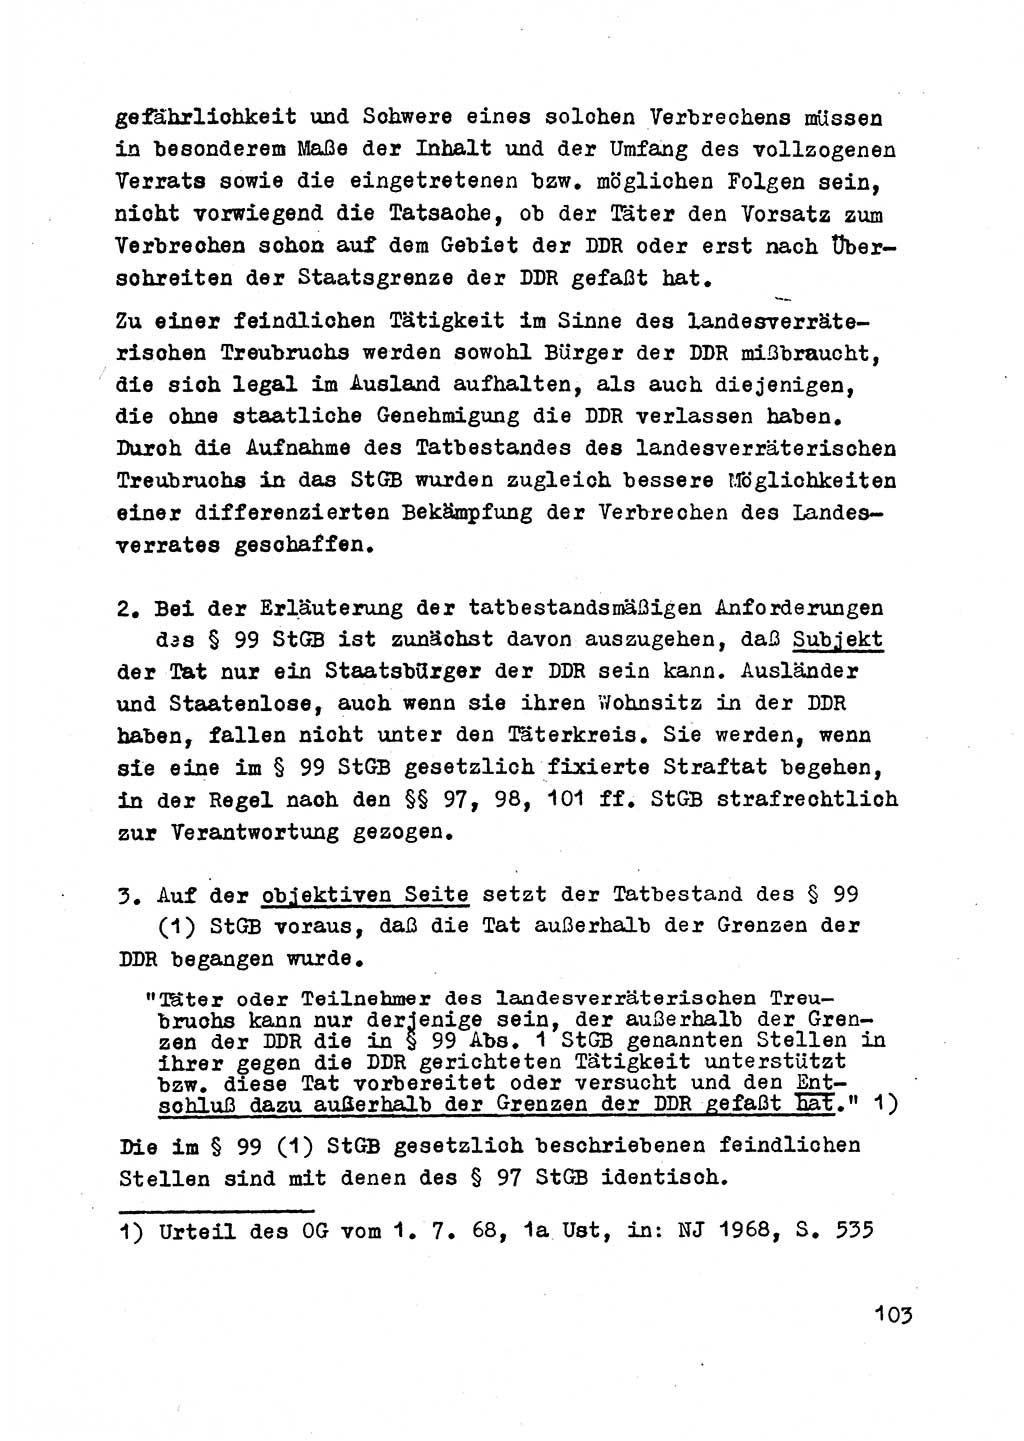 Strafrecht der DDR (Deutsche Demokratische Republik), Besonderer Teil, Lehrmaterial, Heft 2 1969, Seite 103 (Strafr. DDR BT Lehrmat. H. 2 1969, S. 103)